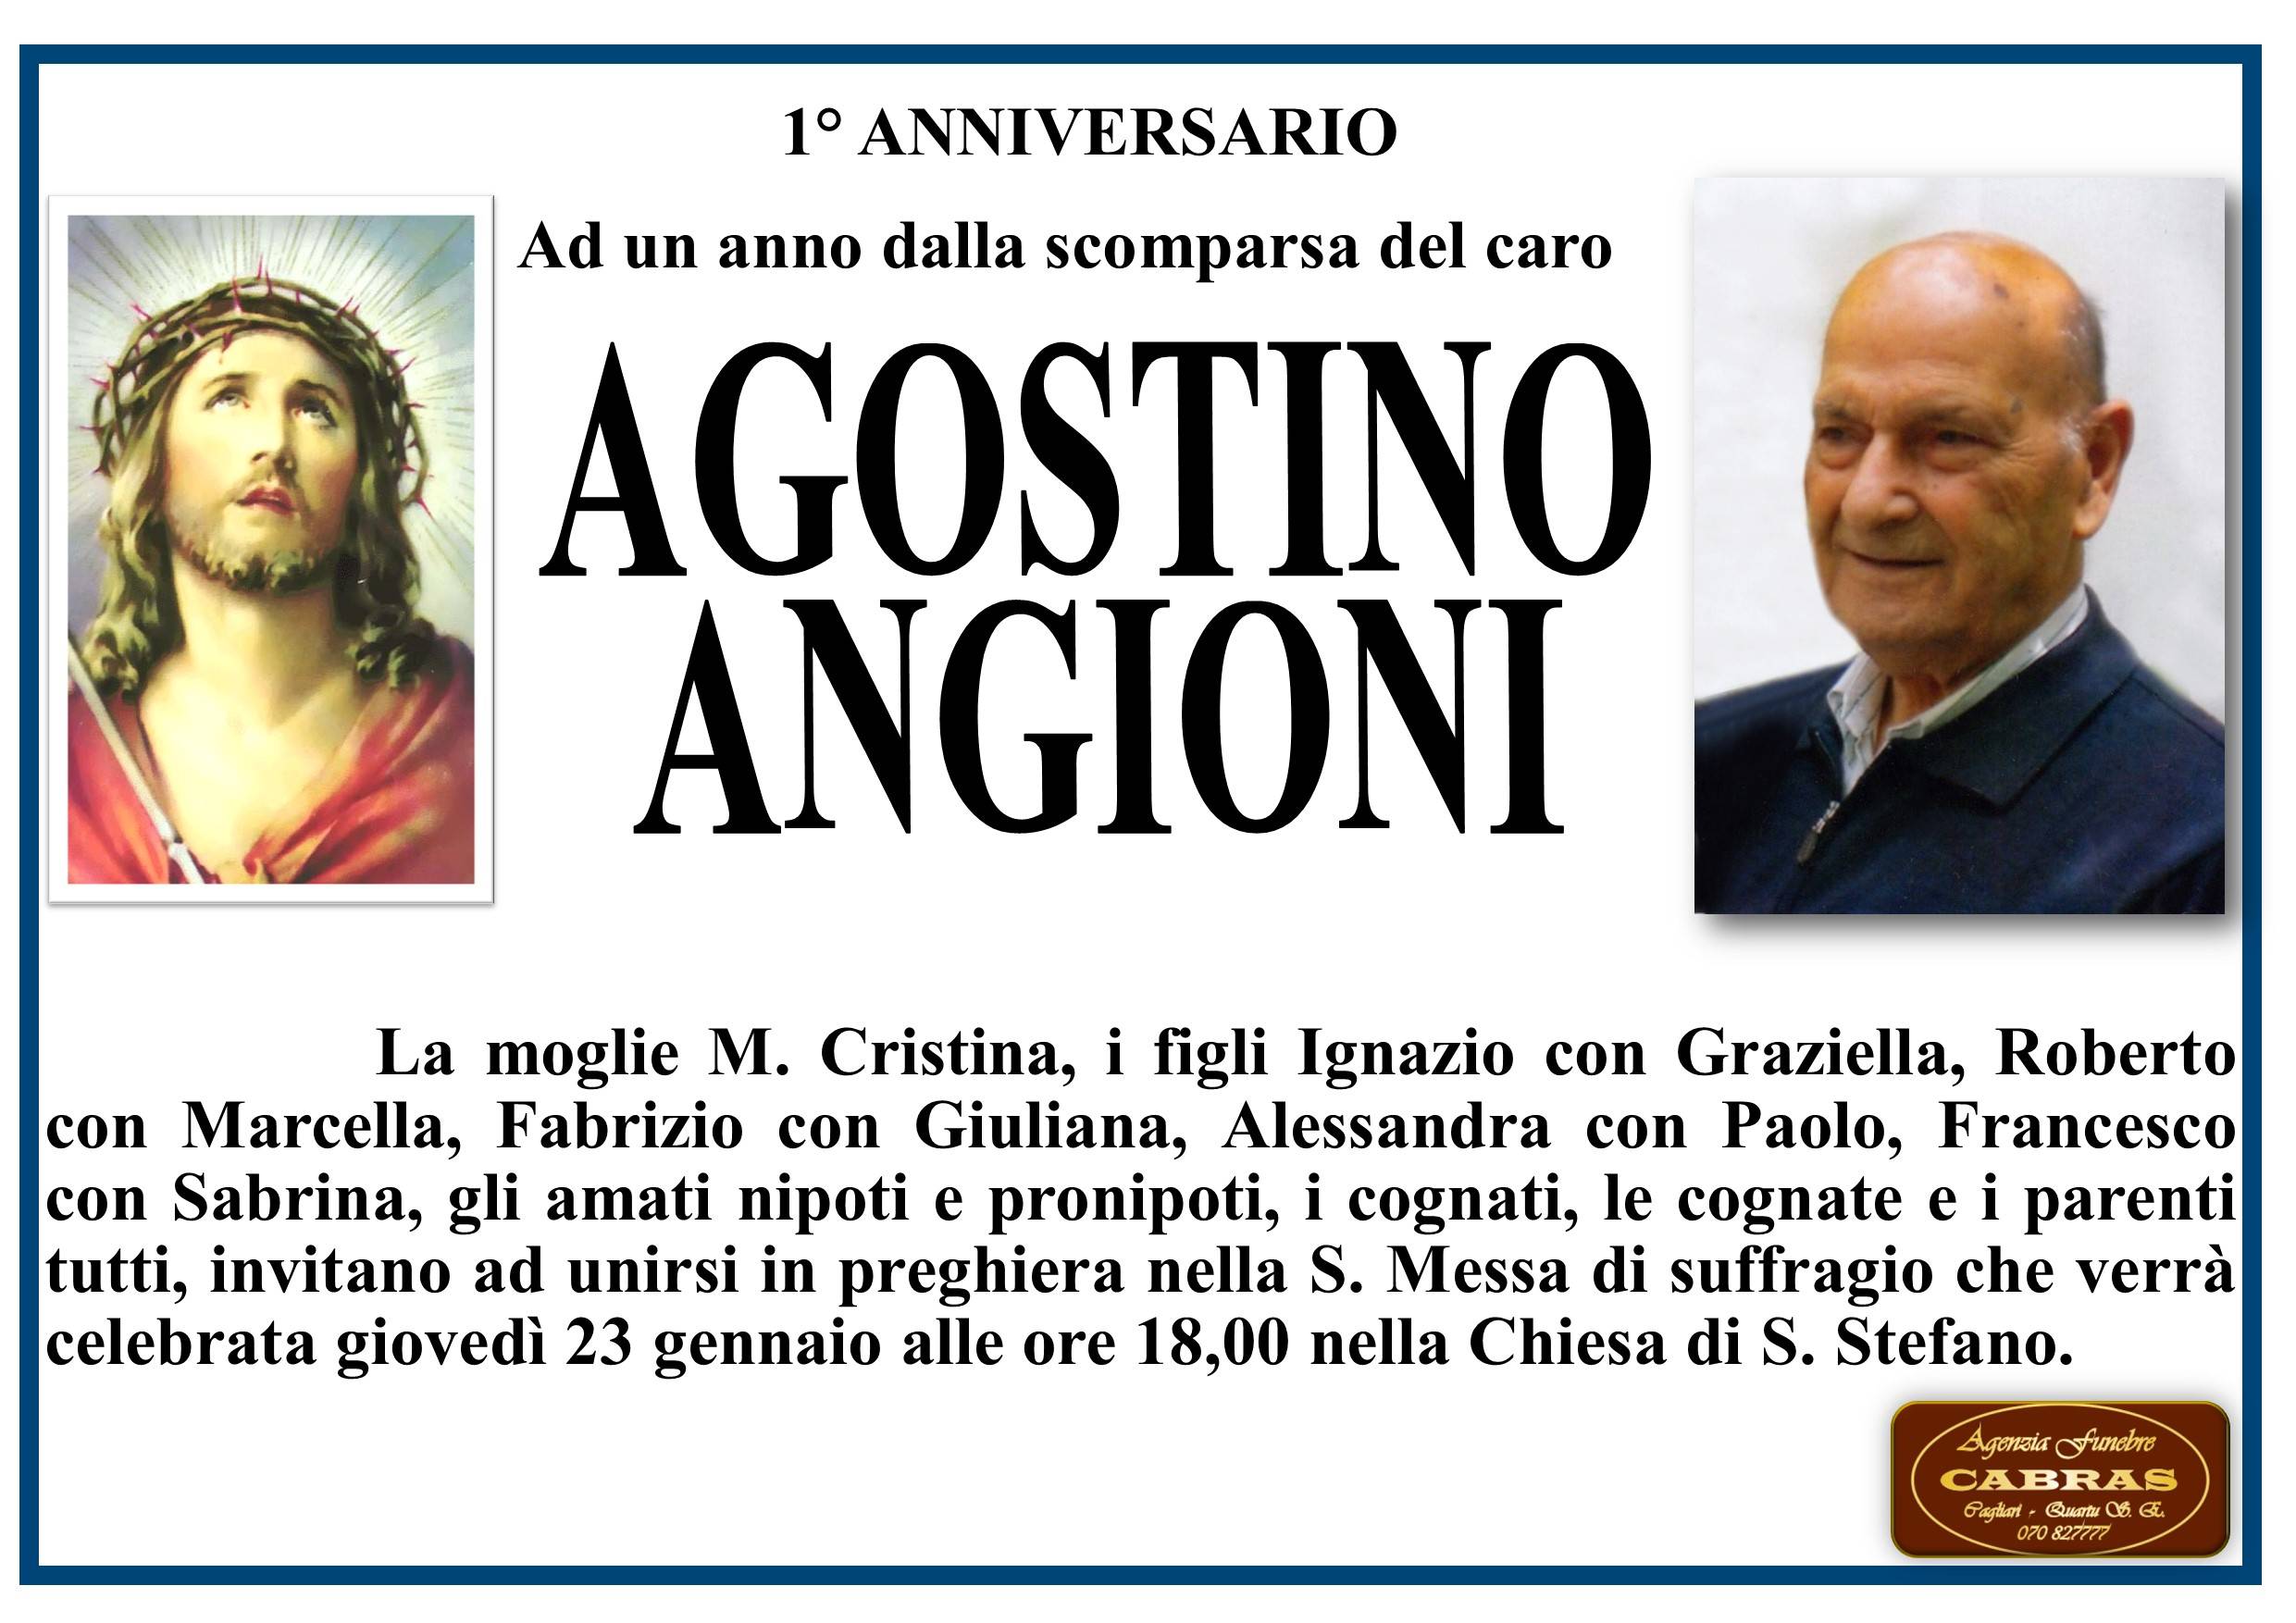 Agostino Angioni